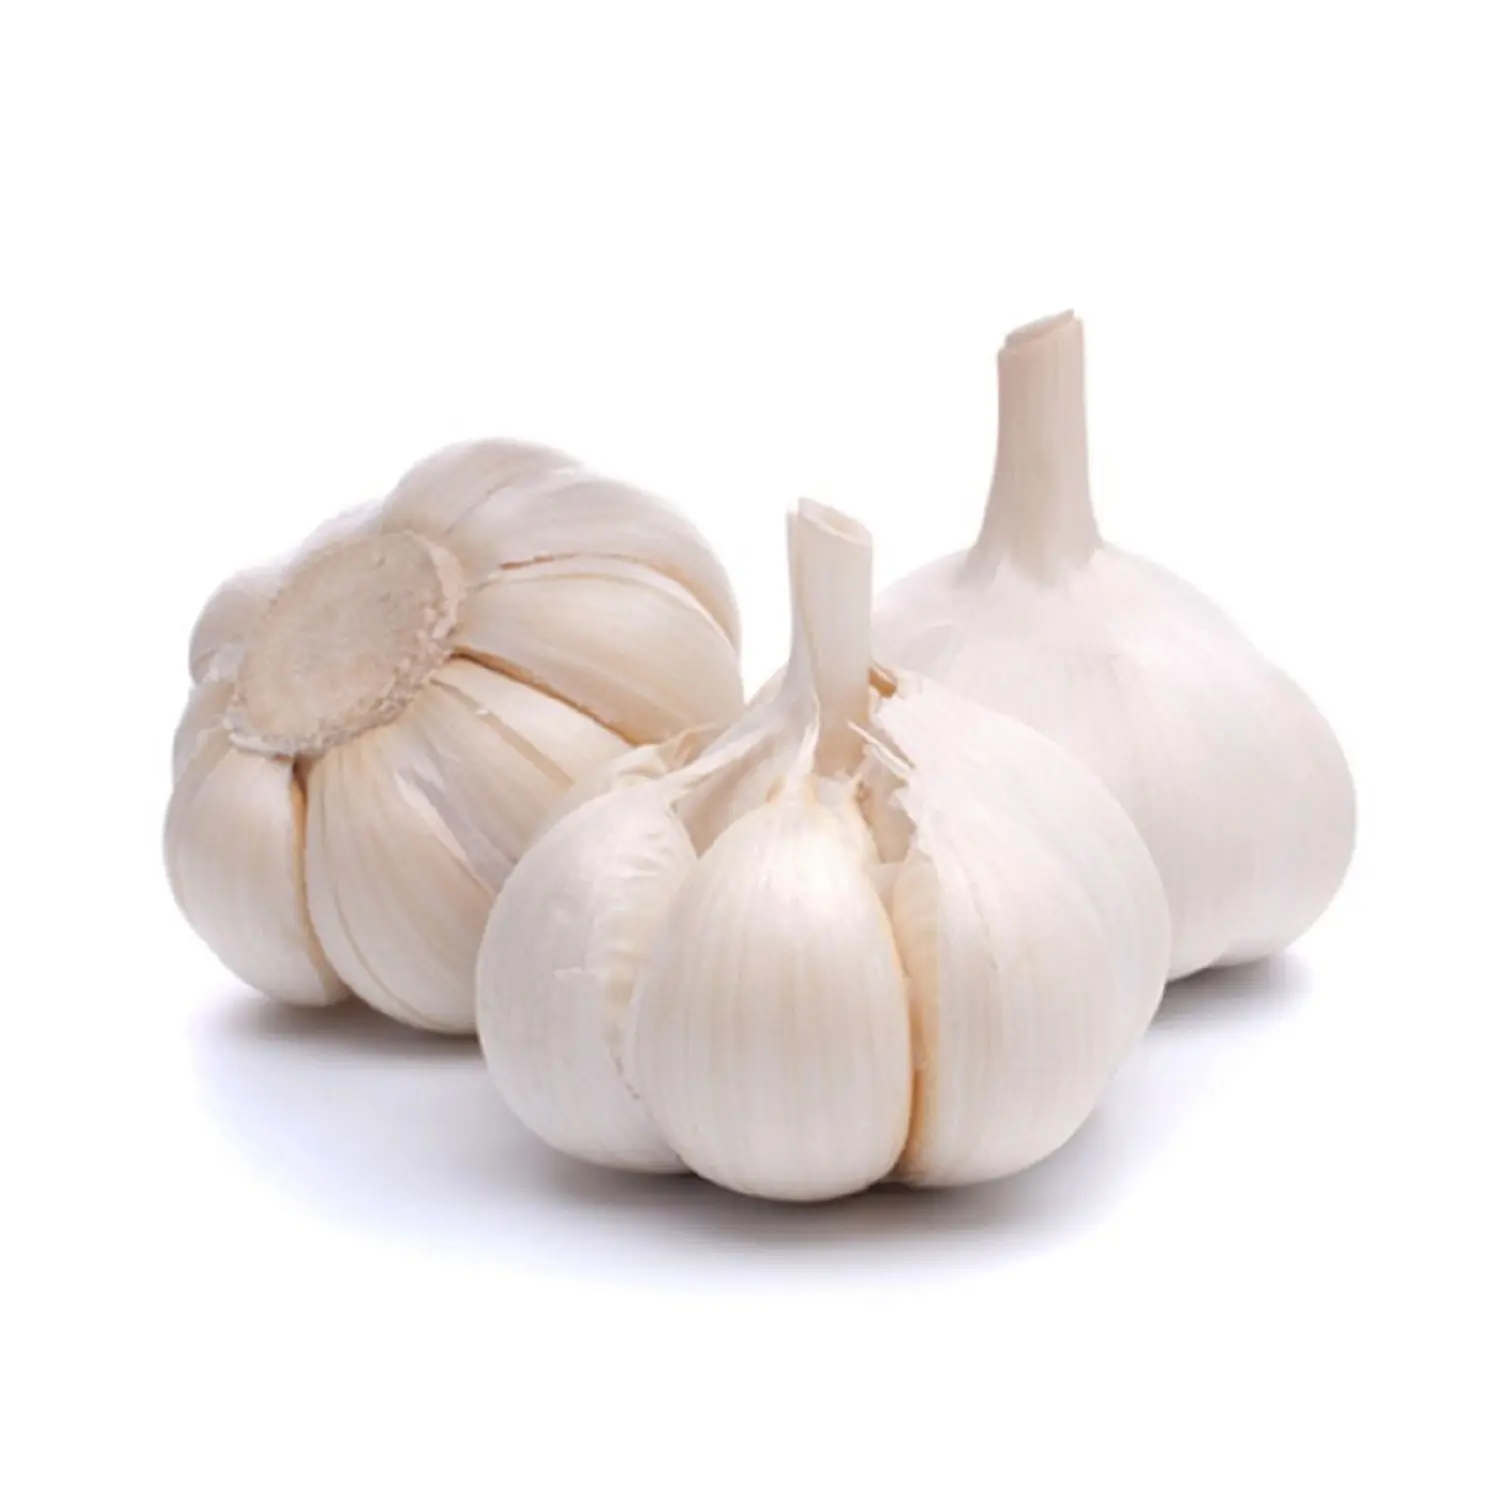 Stok tersedia dalam jumlah besar bawang putih alami segar/bawang putih segar dengan harga grosir